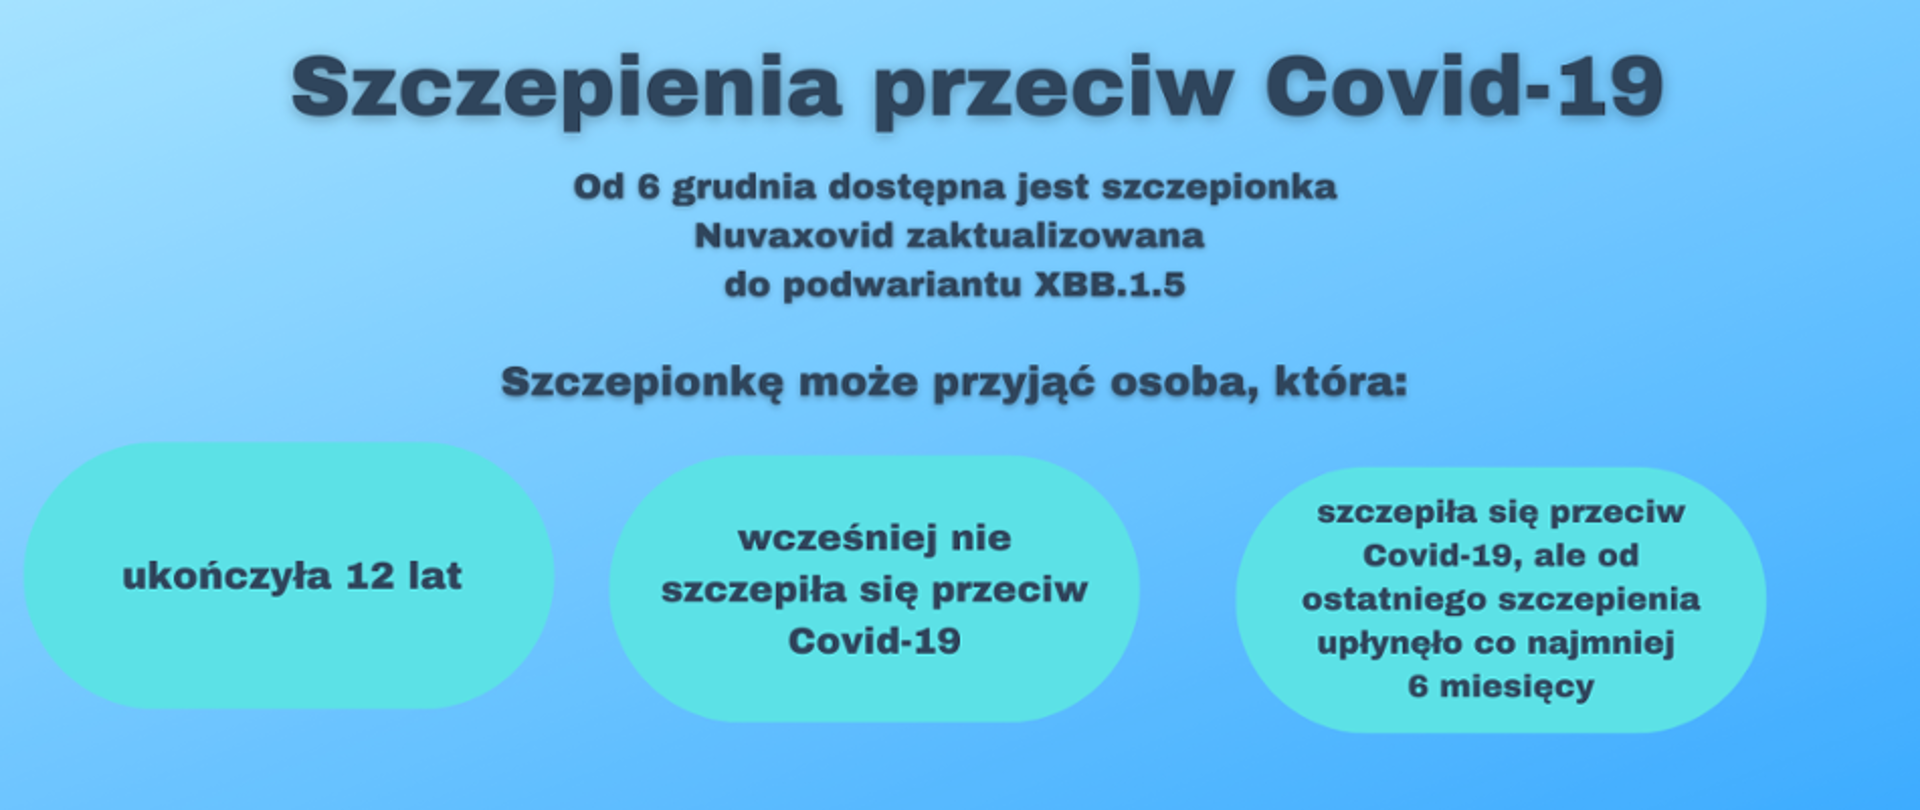 szczepienia_Covid-19